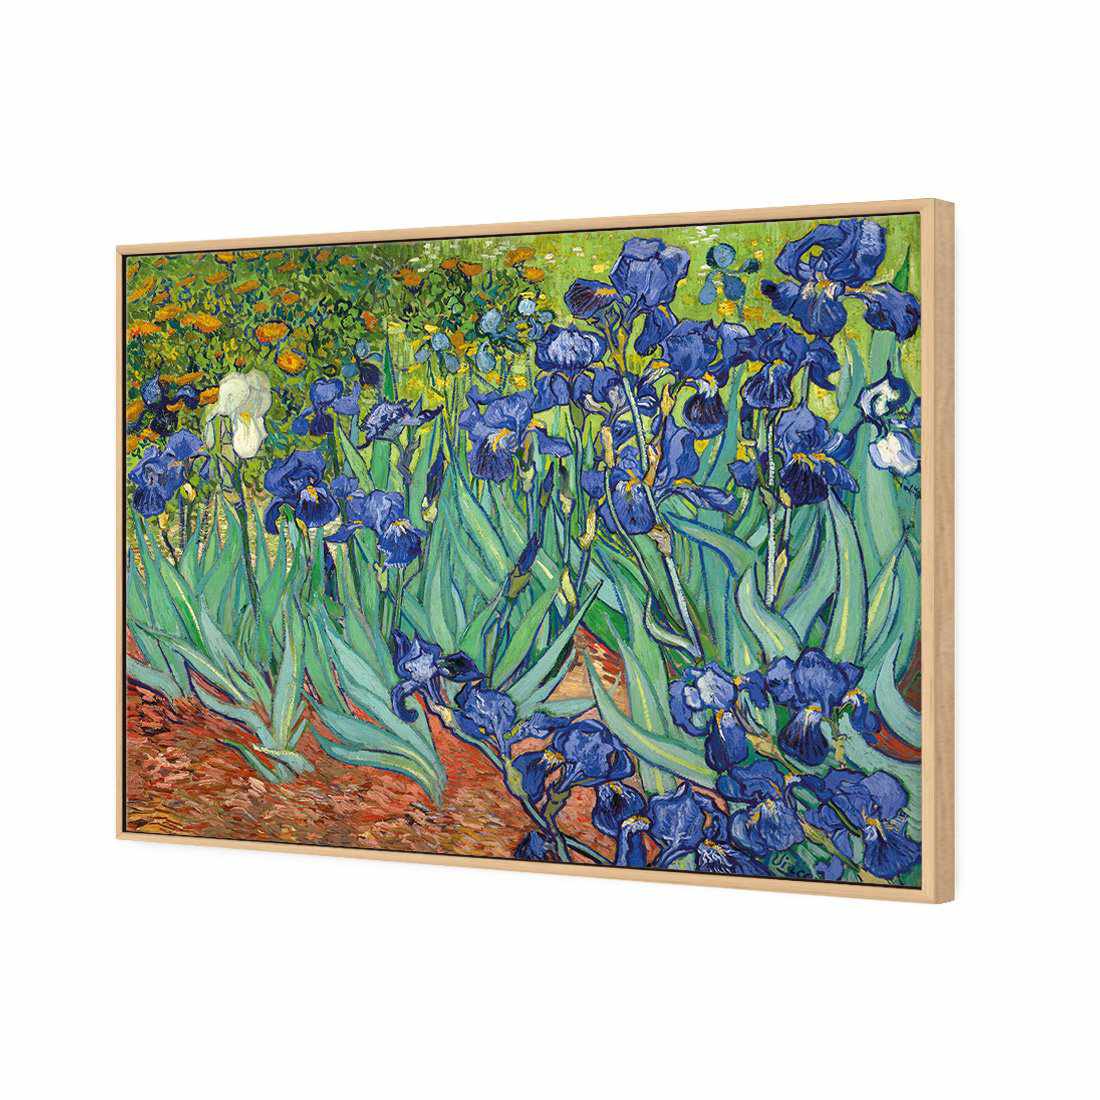 Irises 2 - Van Gogh Canvas Art-Canvas-Wall Art Designs-45x30cm-Canvas - Oak Frame-Wall Art Designs